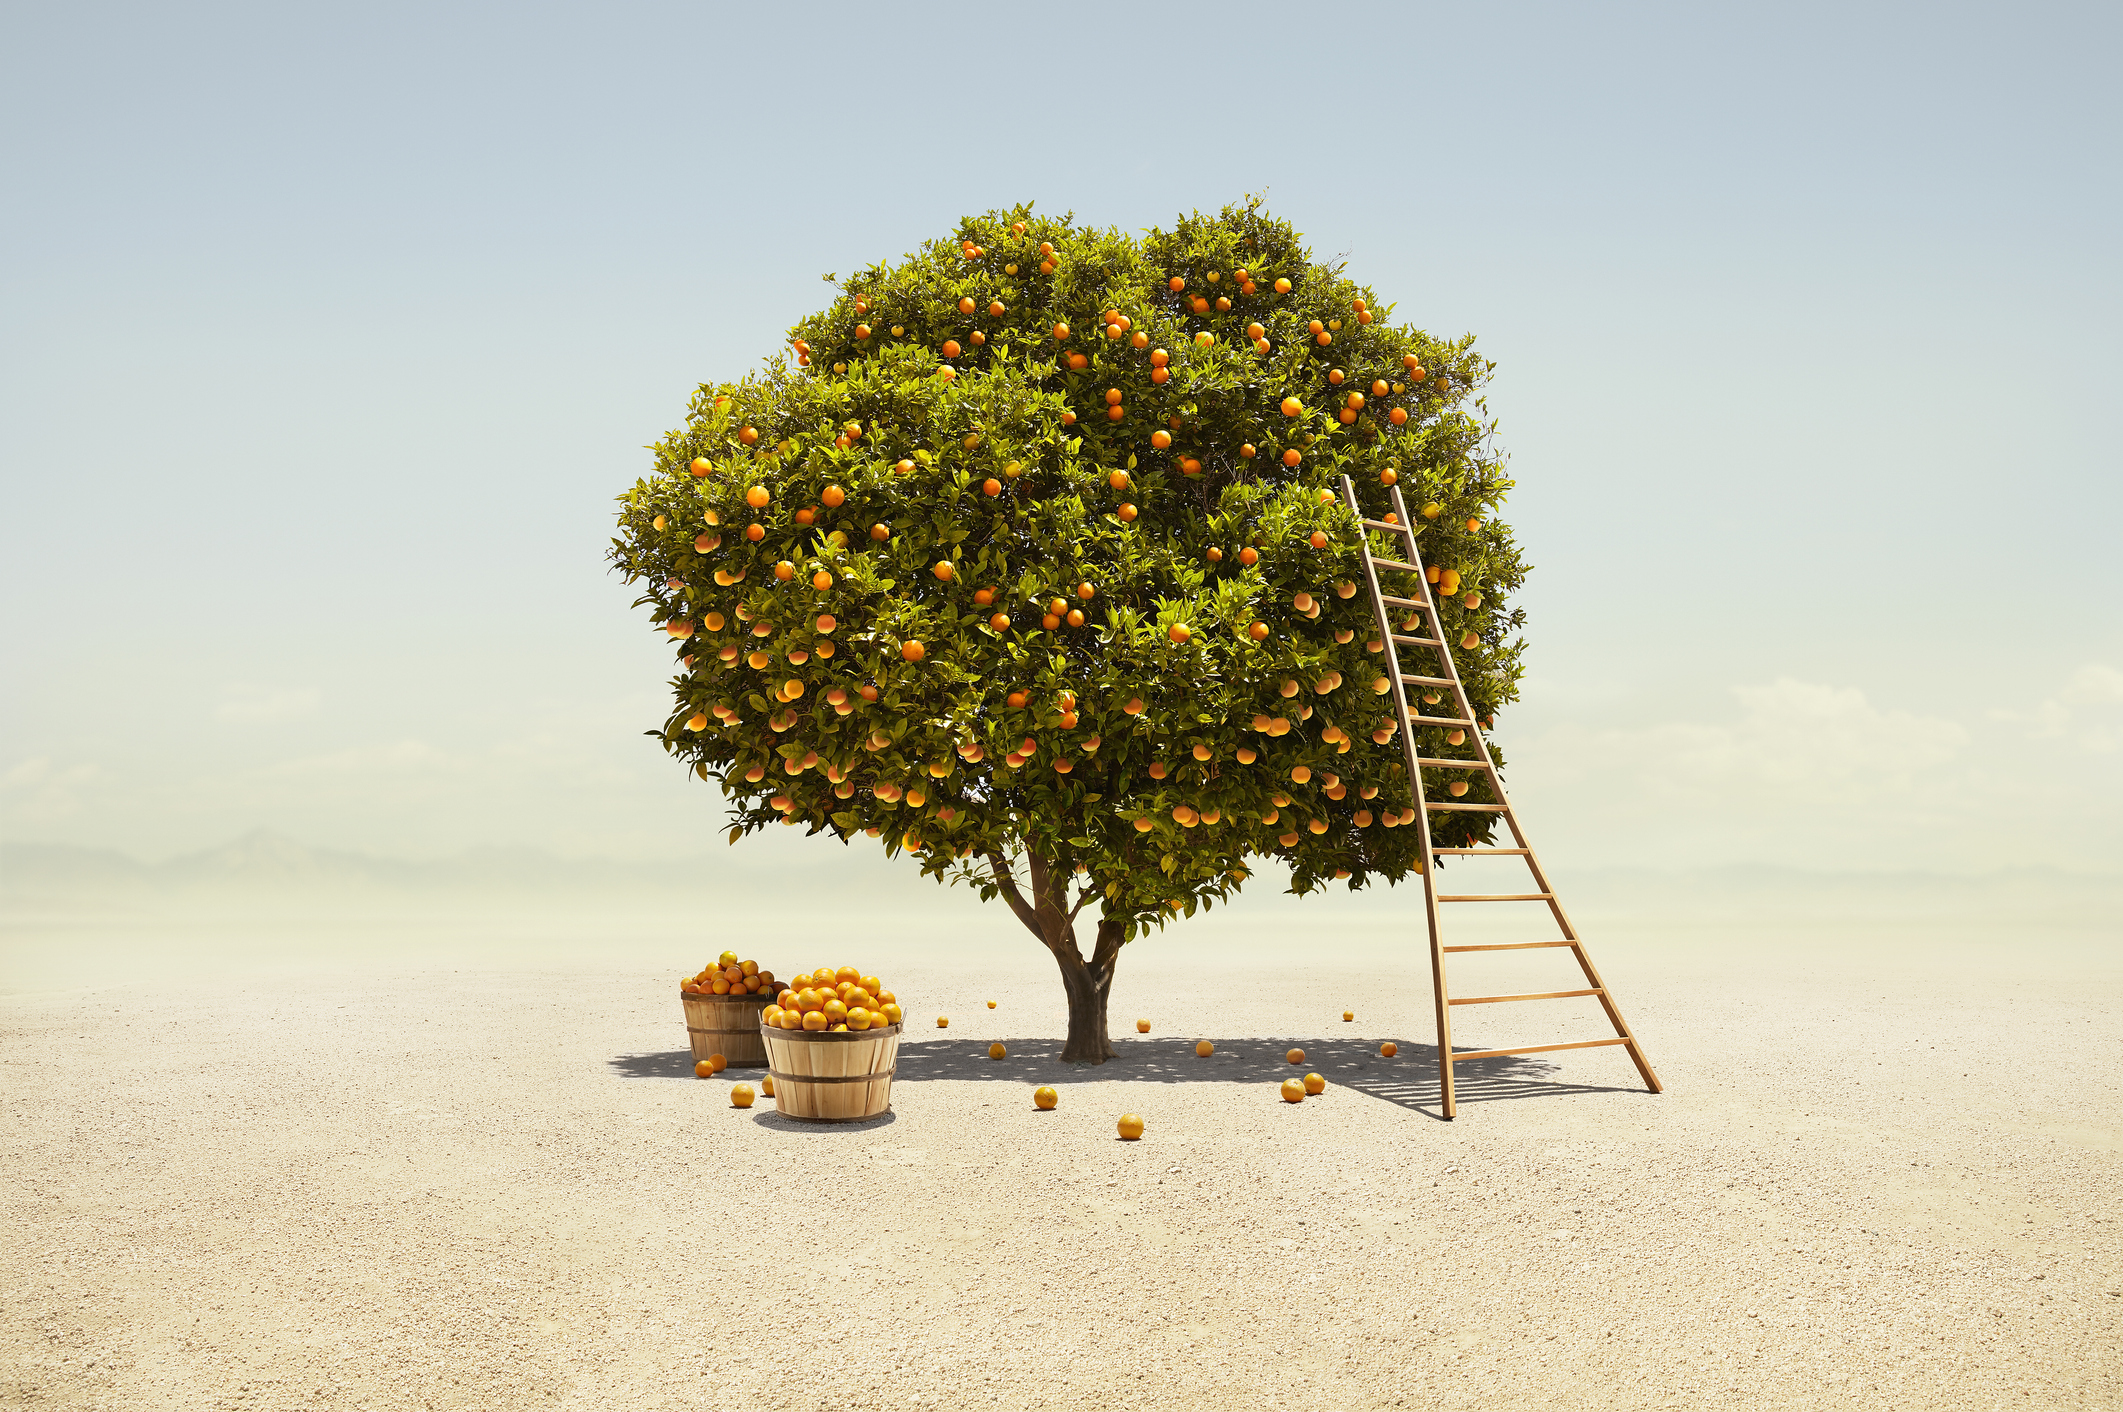 Uma laranjeira totalmente frutífera sendo colhida em uma paisagem árida do deserto do sul da Califórnia;  investidores de primeira viagem prosperando em recessão